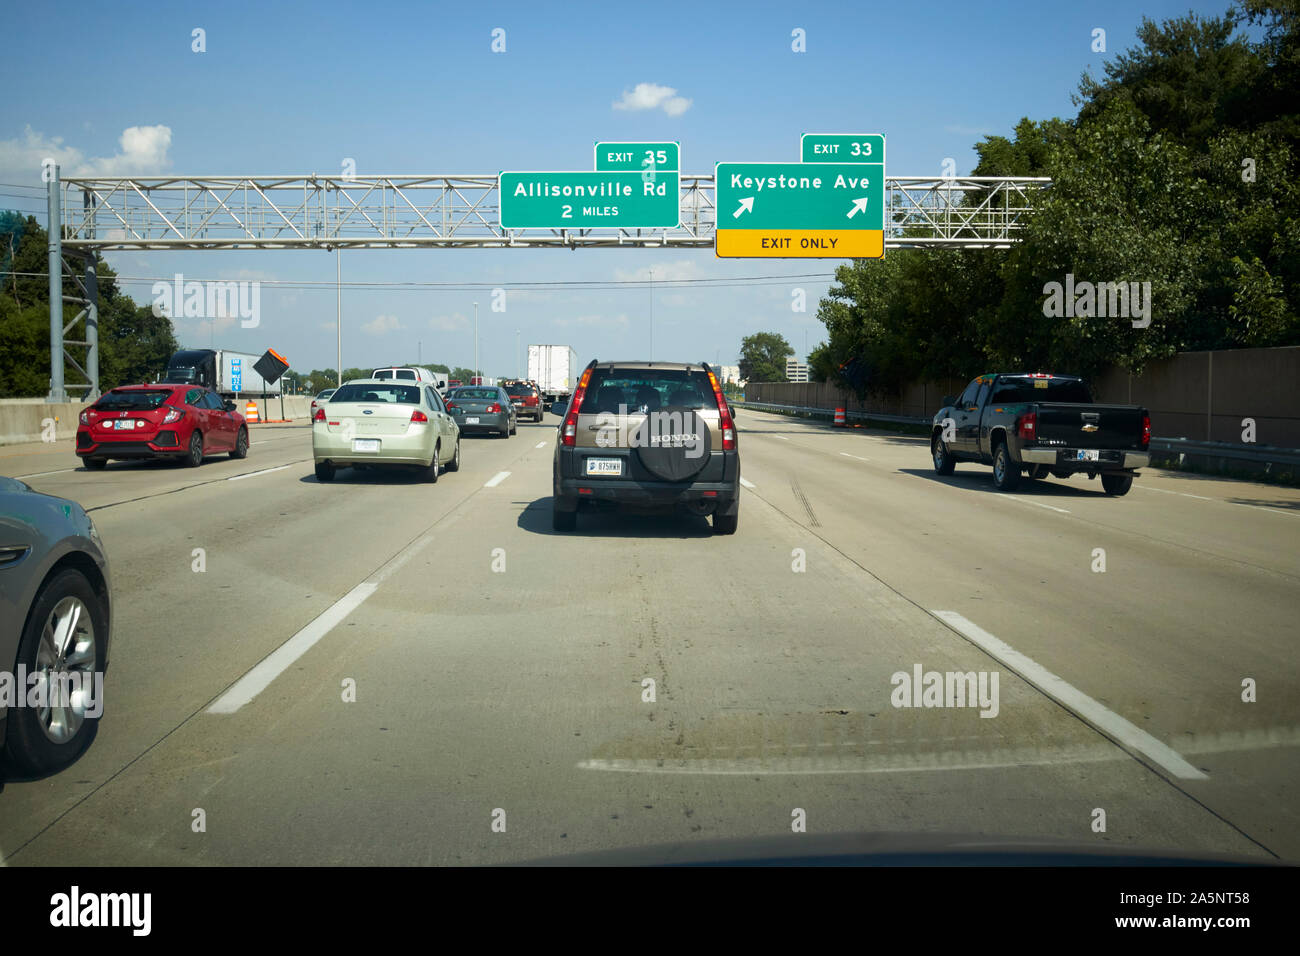 Fahrt entlang der Interstate I-465 um indianapolis bei rush hour Annäherung an der Ausfahrt mit Overhead zeichen Indiana USA Stockfoto